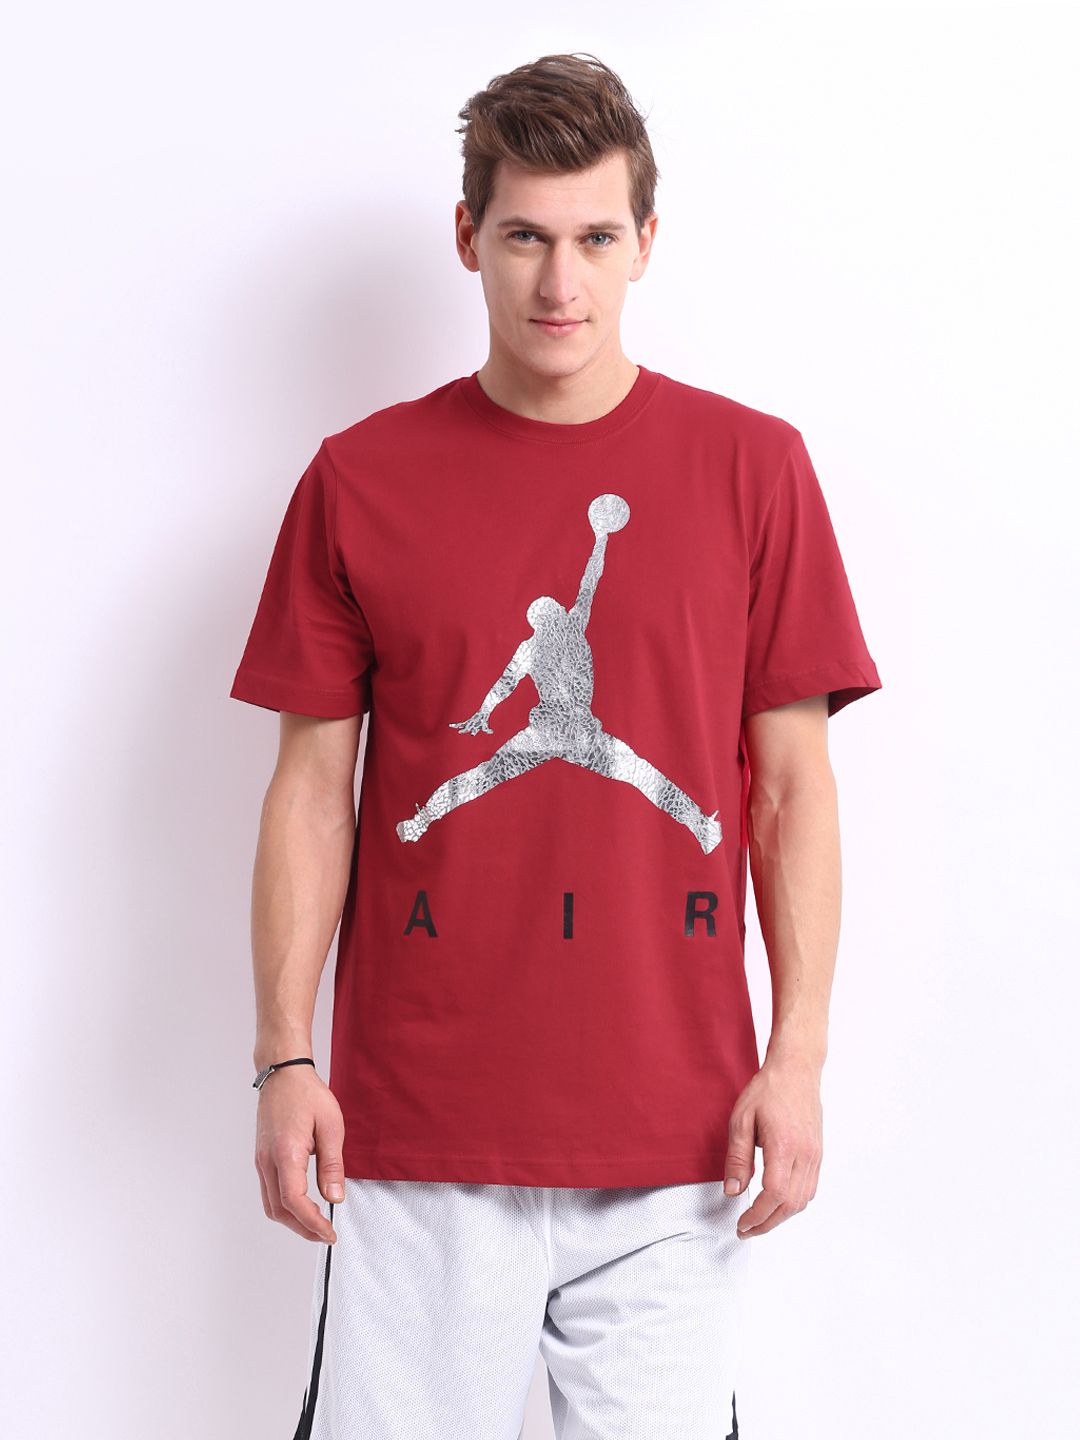 Jordan Shirts Price Online Sale, UP TO 